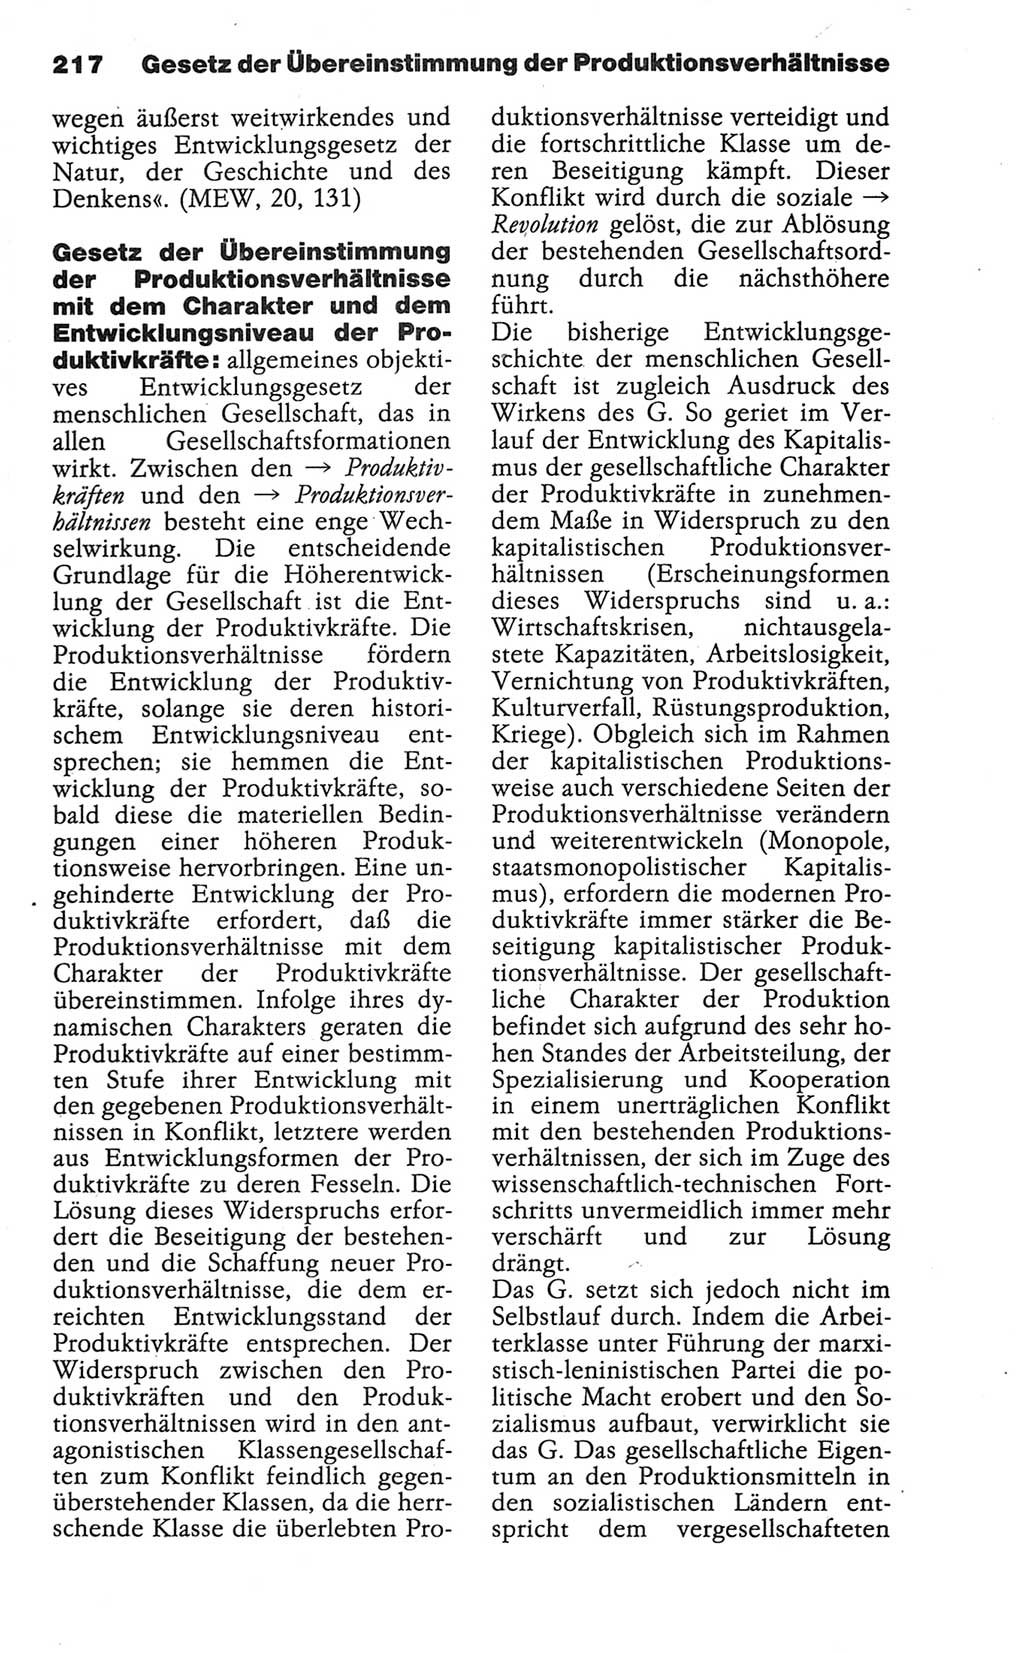 Wörterbuch der marxistisch-leninistischen Philosophie [Deutsche Demokratische Republik (DDR)] 1986, Seite 217 (Wb. ML Phil. DDR 1986, S. 217)